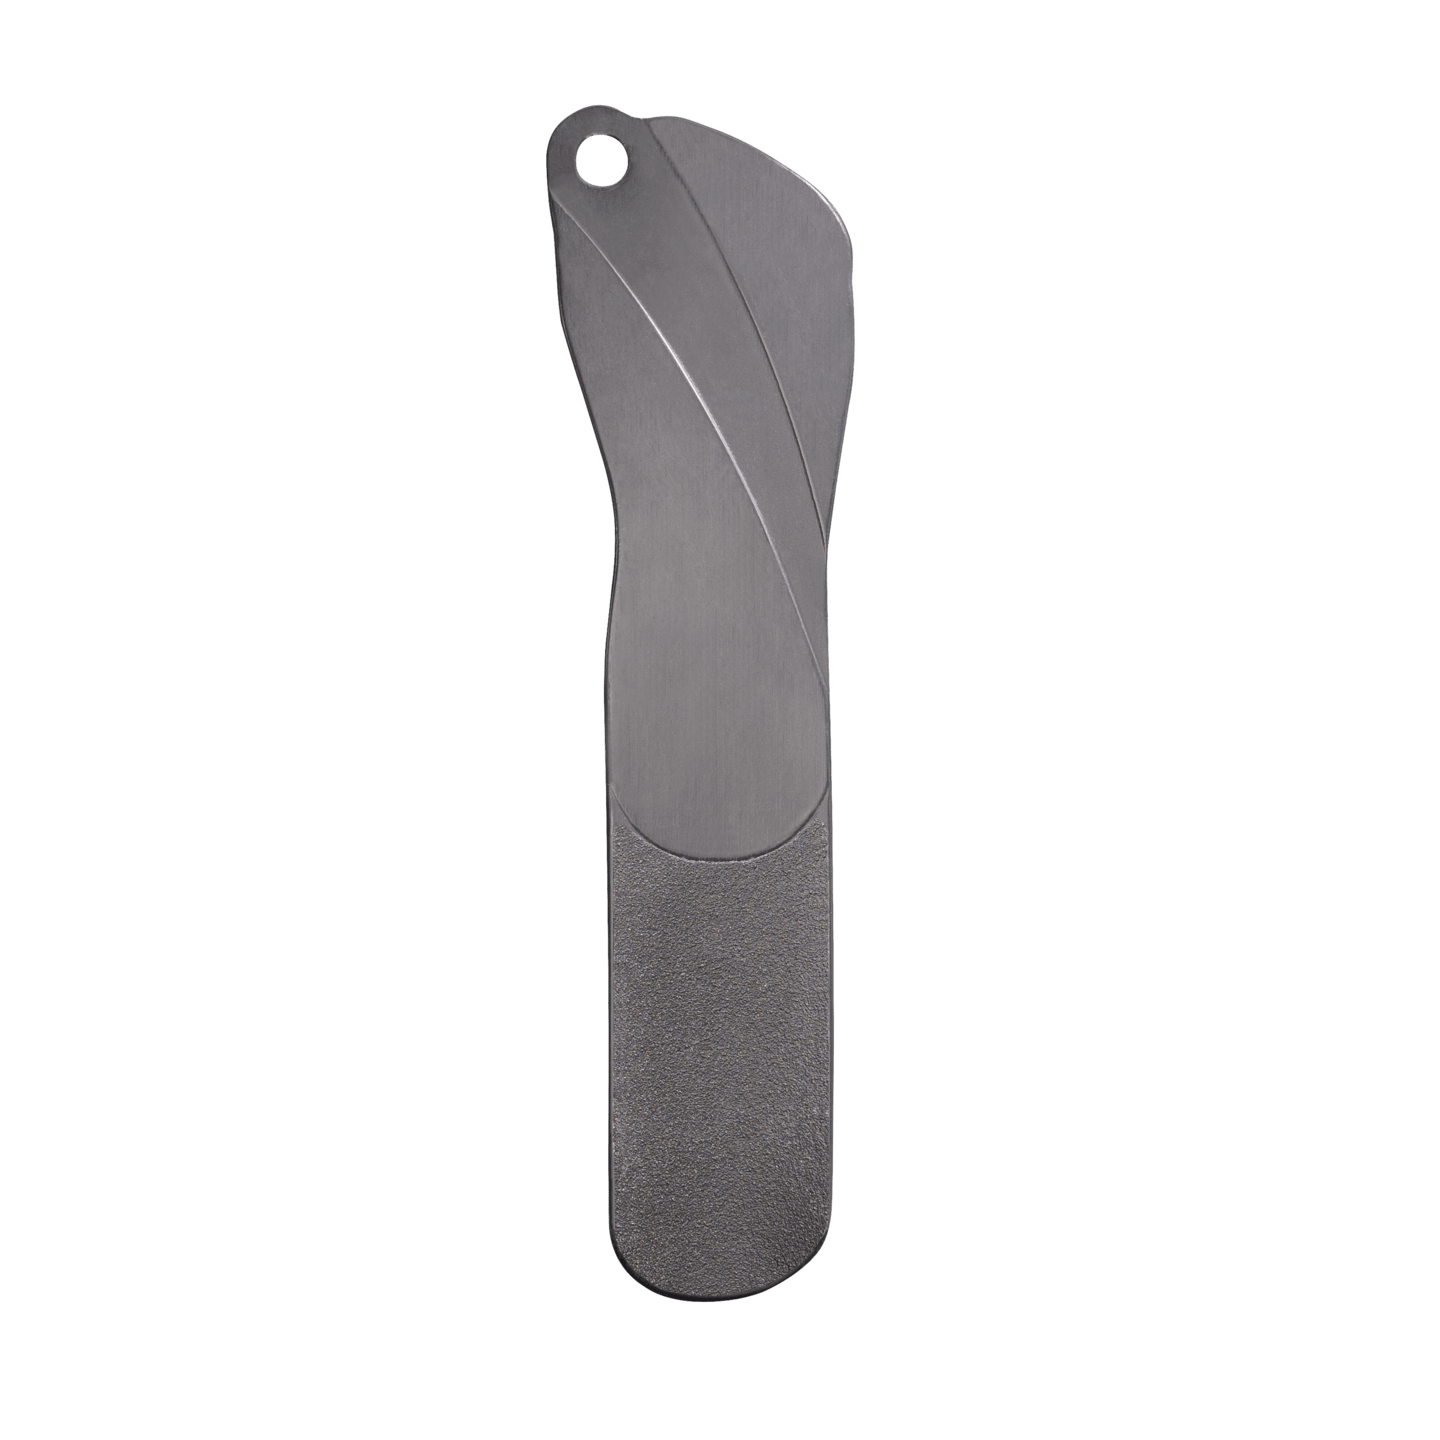 RUCK - Fußfeile, Kunststoff, 20 cm, 50 Stück in schwarz